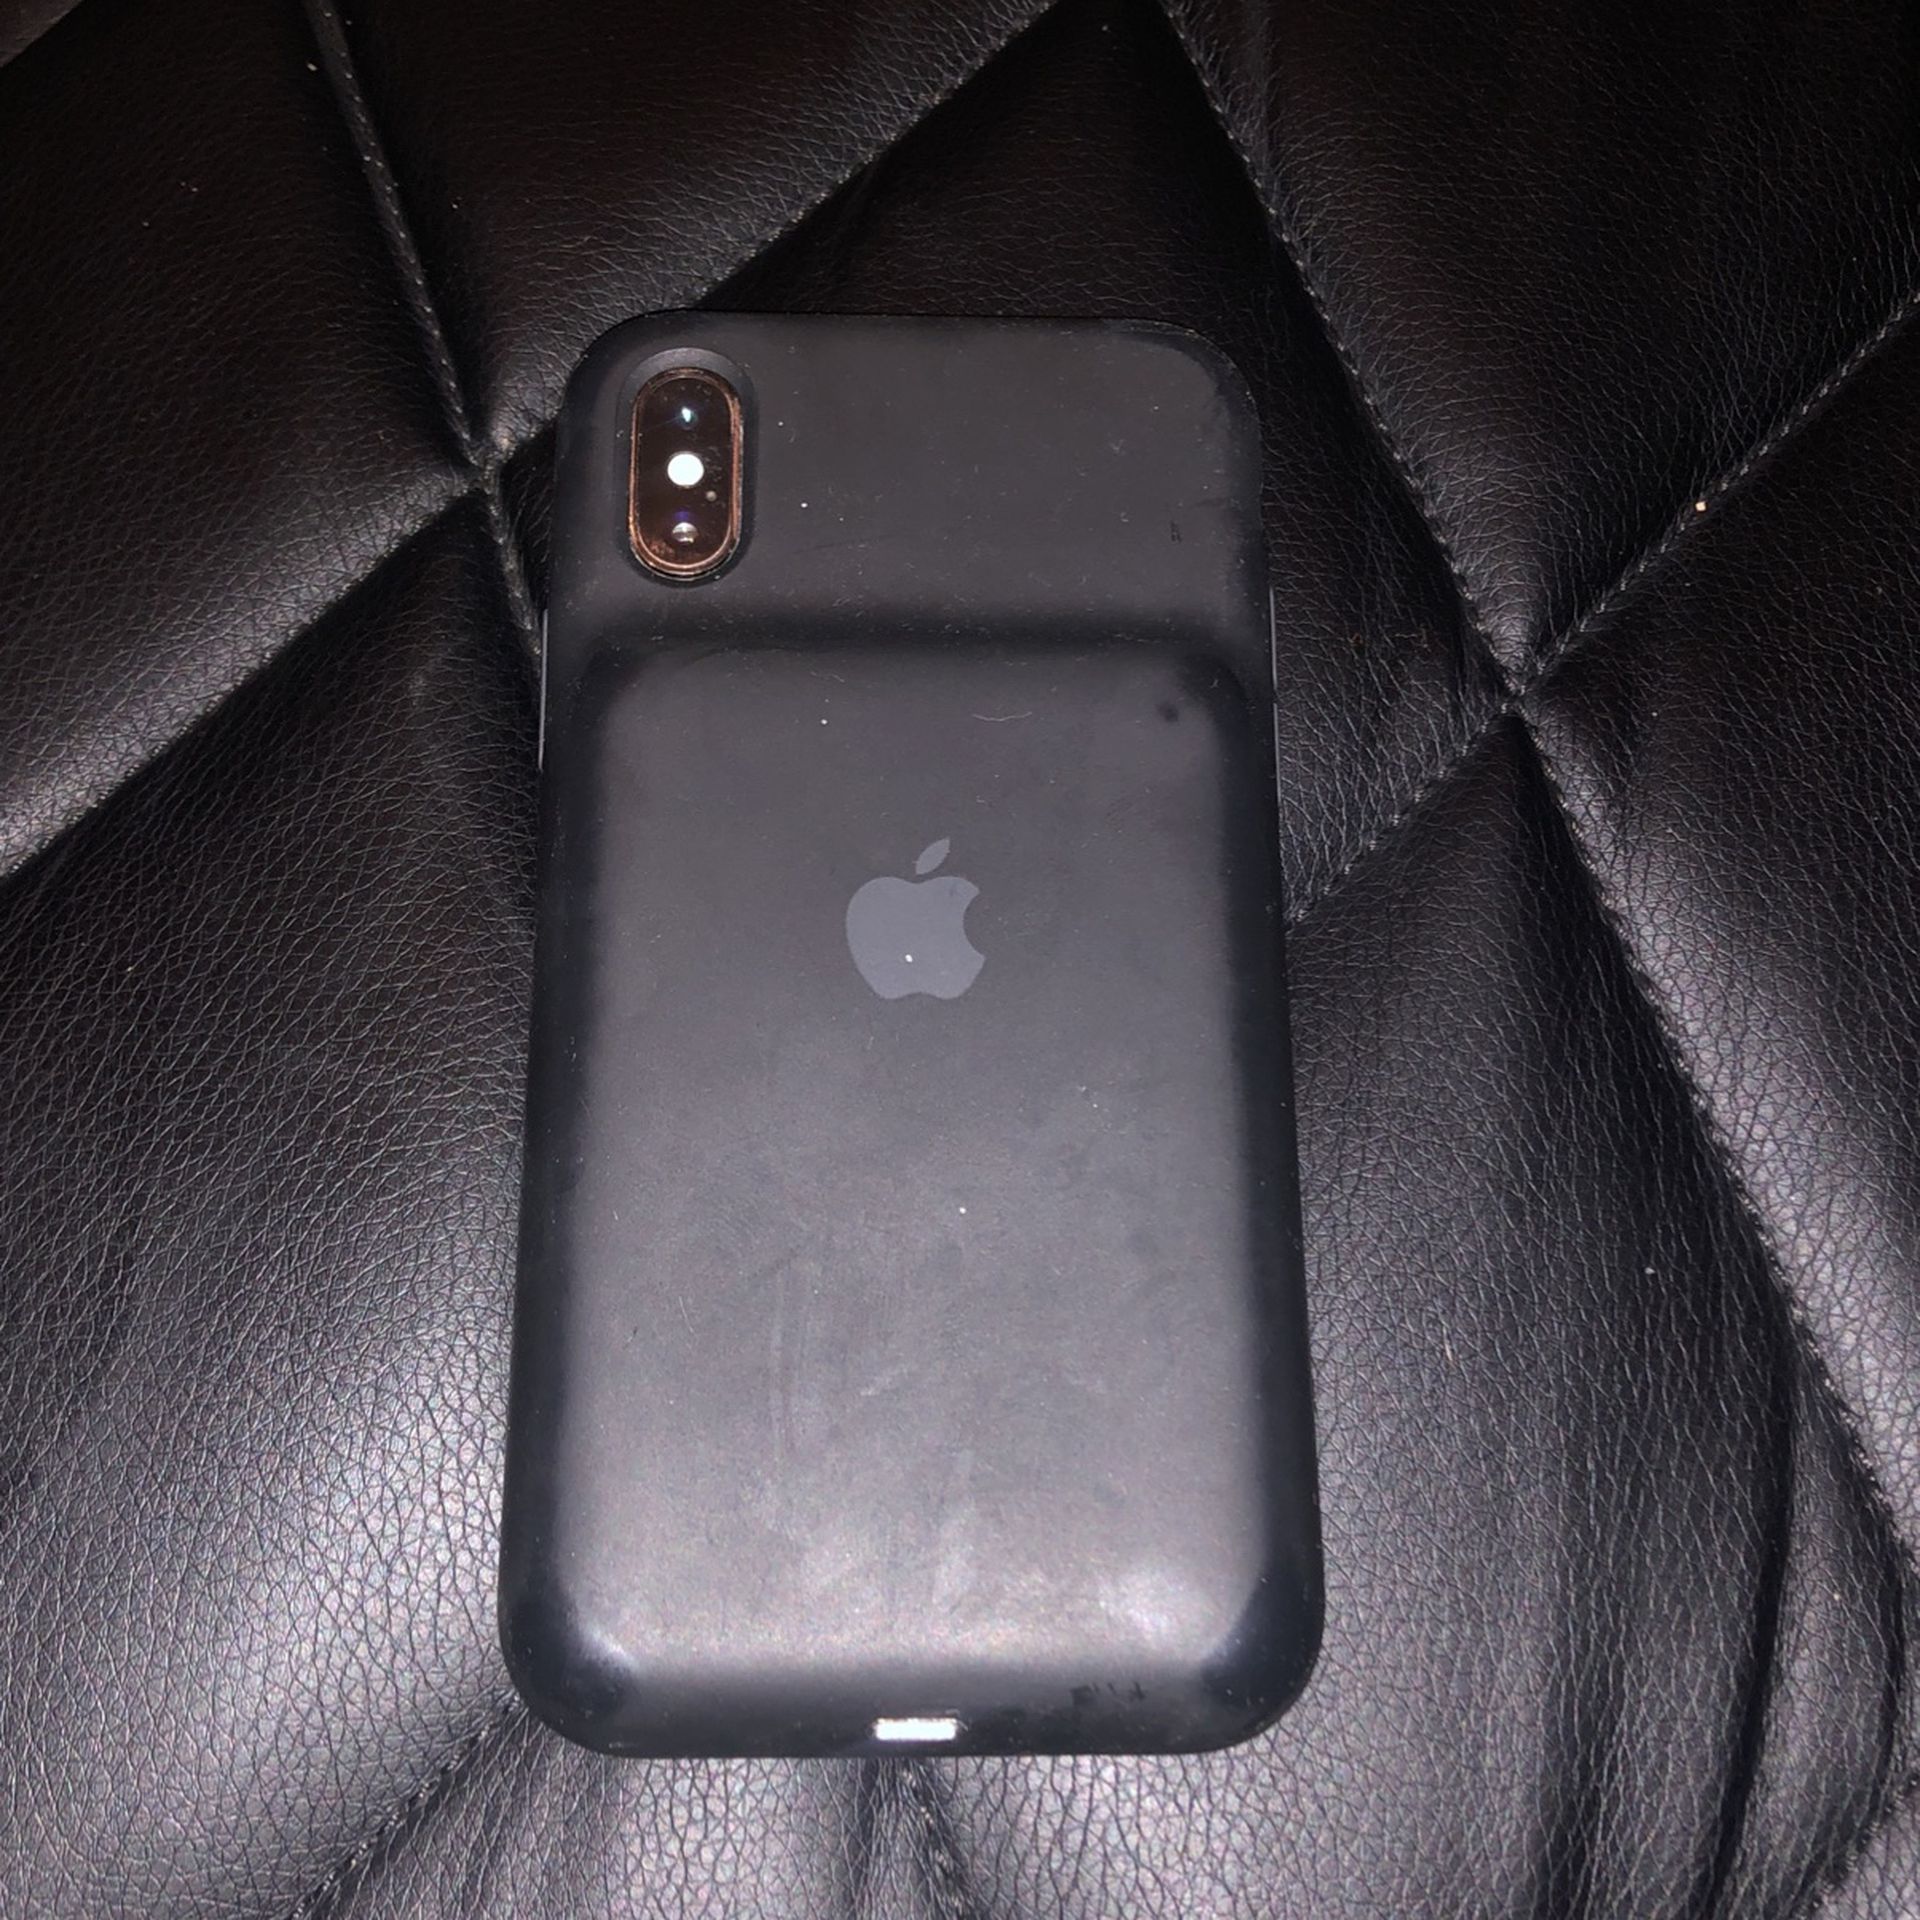 OEM iphone x charging case